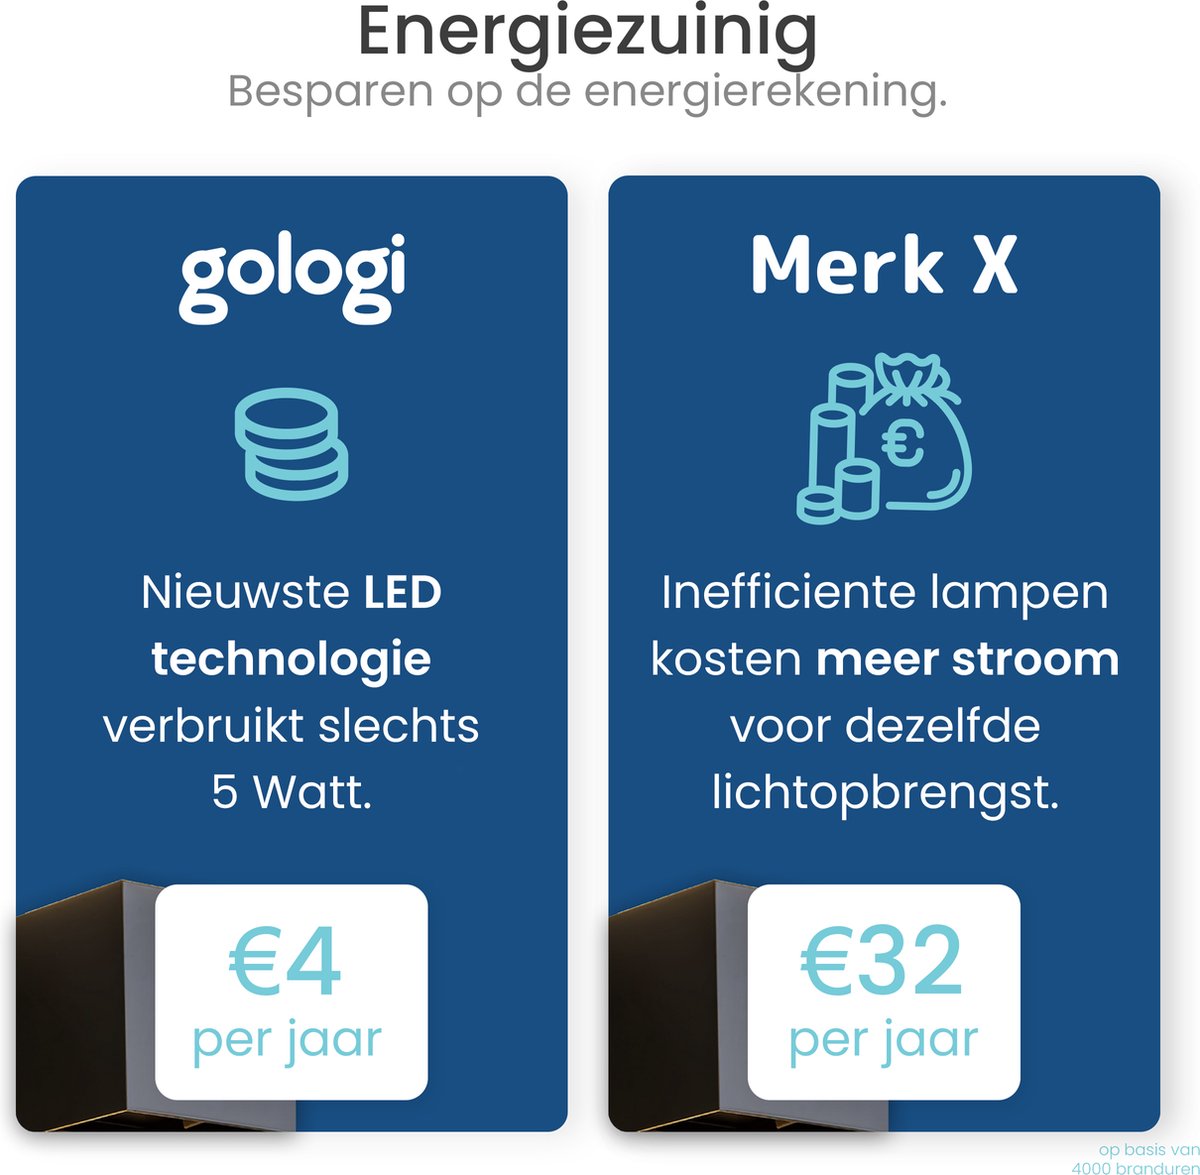 Gologi Slimme Wandlamp - Binnen en Buiten - Up Down Verlichting - Dimbaar - Industrieel - Smart Lamp - Buitenlamp - Waterdicht - Energiezuinig en Roestvrij - RGB - Met App - Zwart